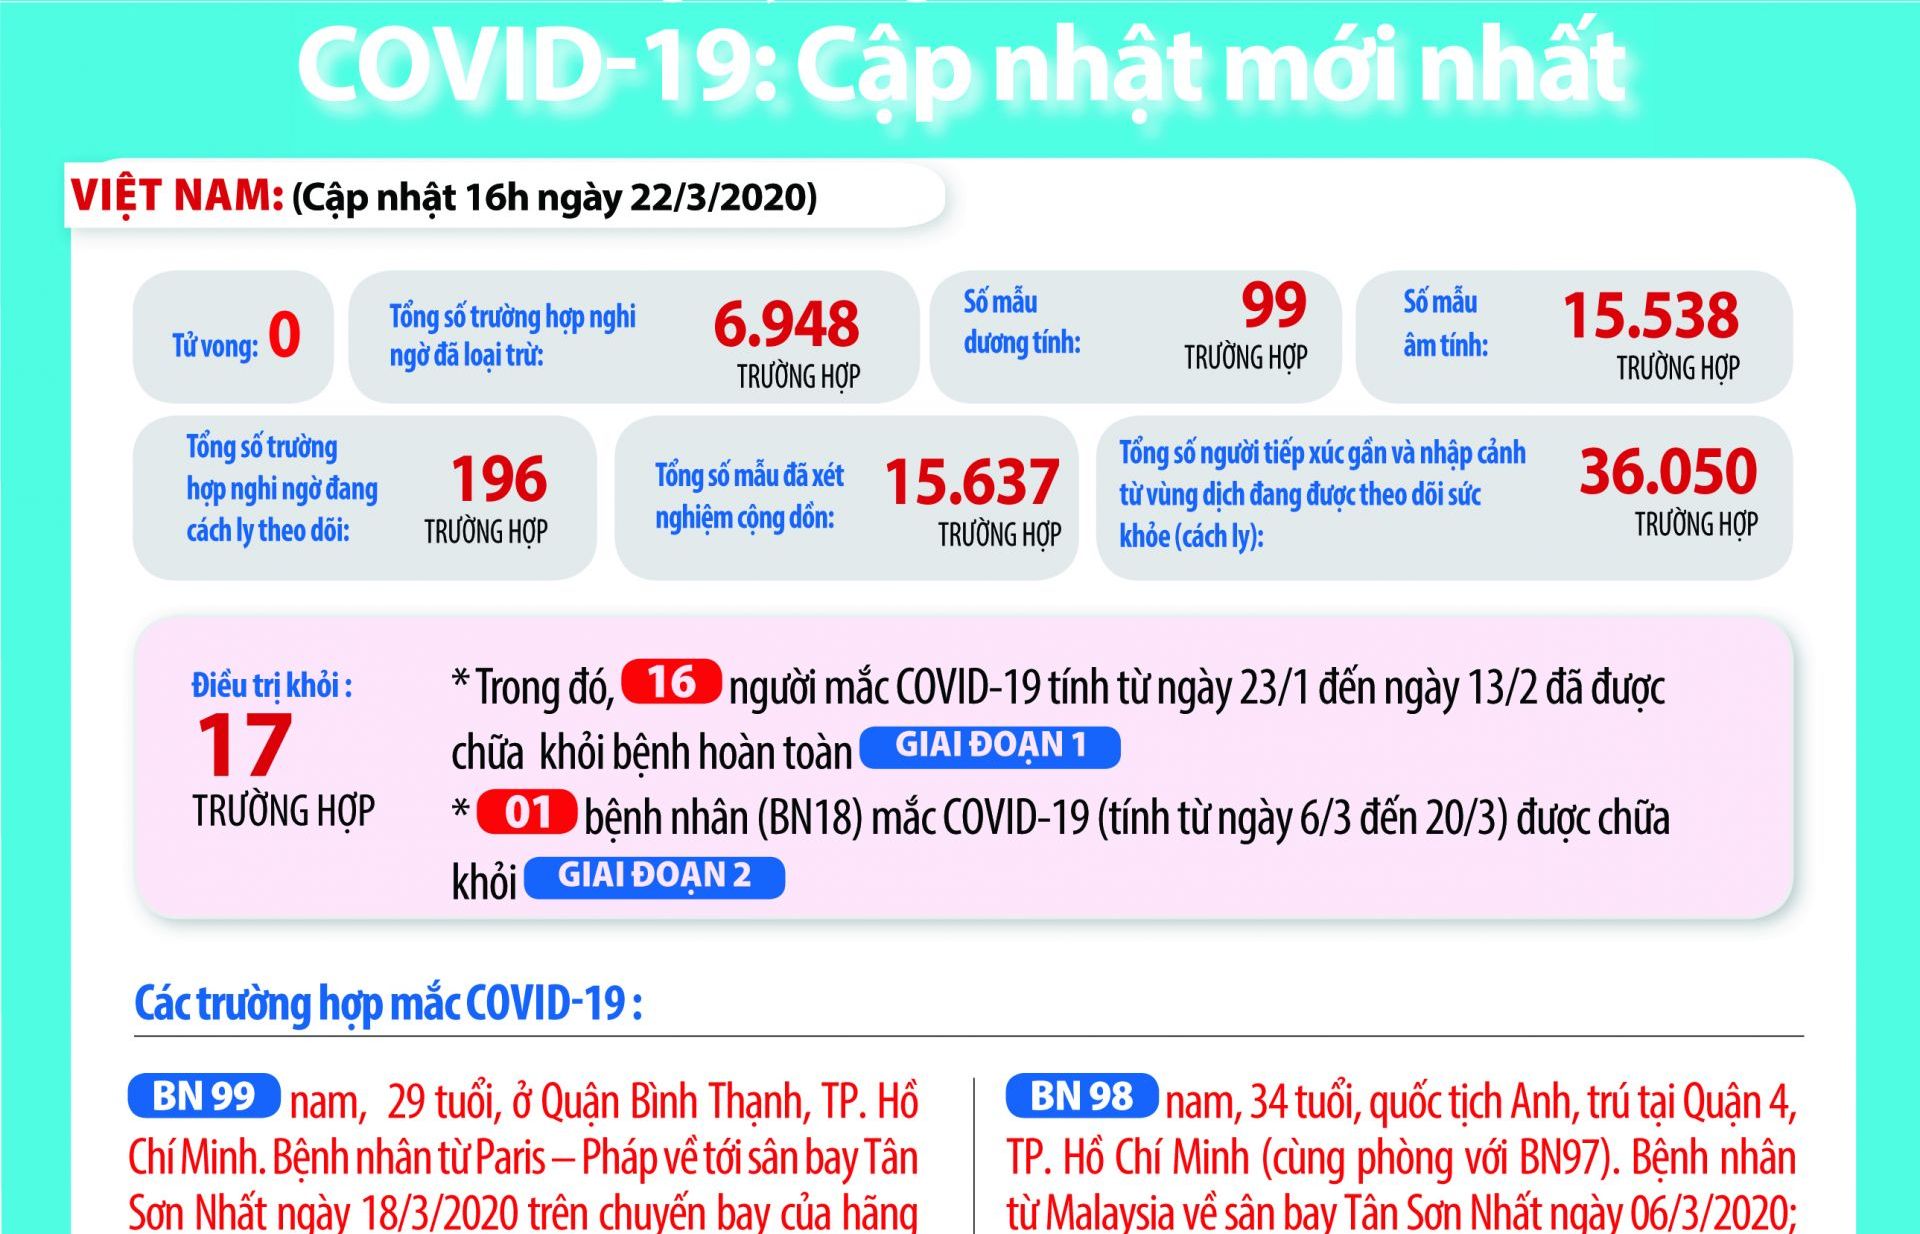 Việt Nam ghi nhận Ca bệnh số 99 dương tính với Covid-19